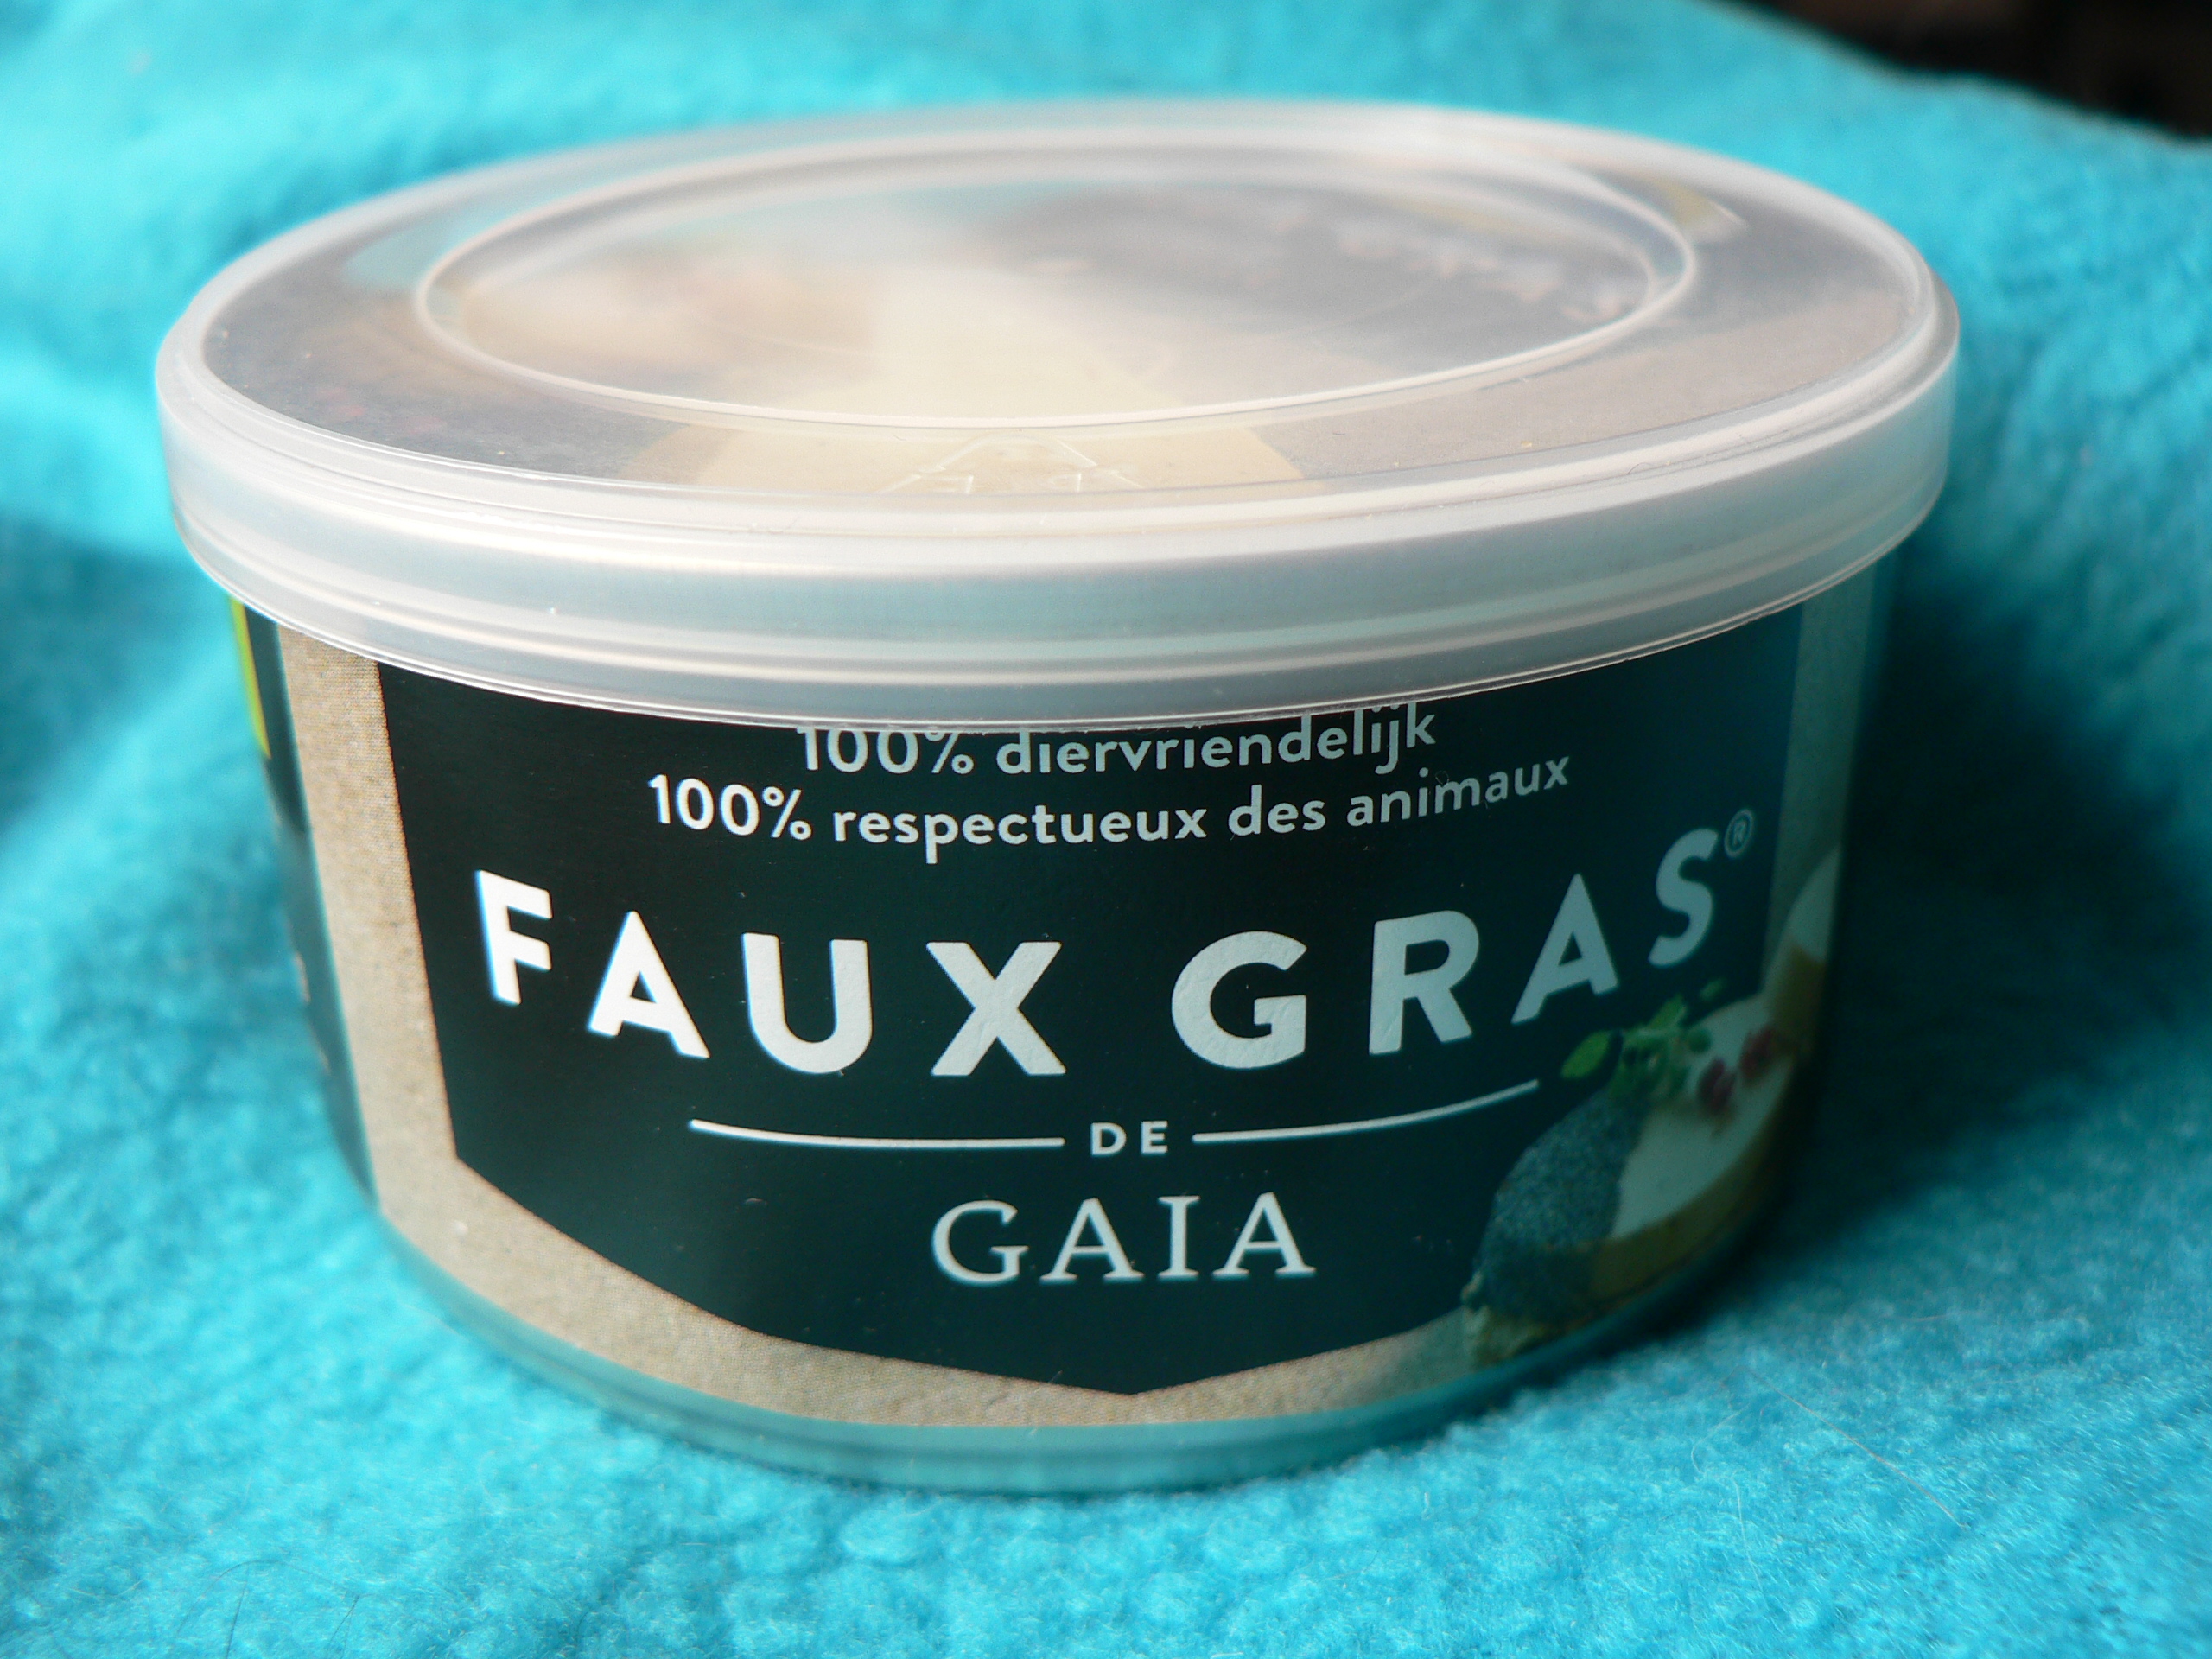 Tartex Faux Gras de GAIA – Vegan Stuff in Belgium